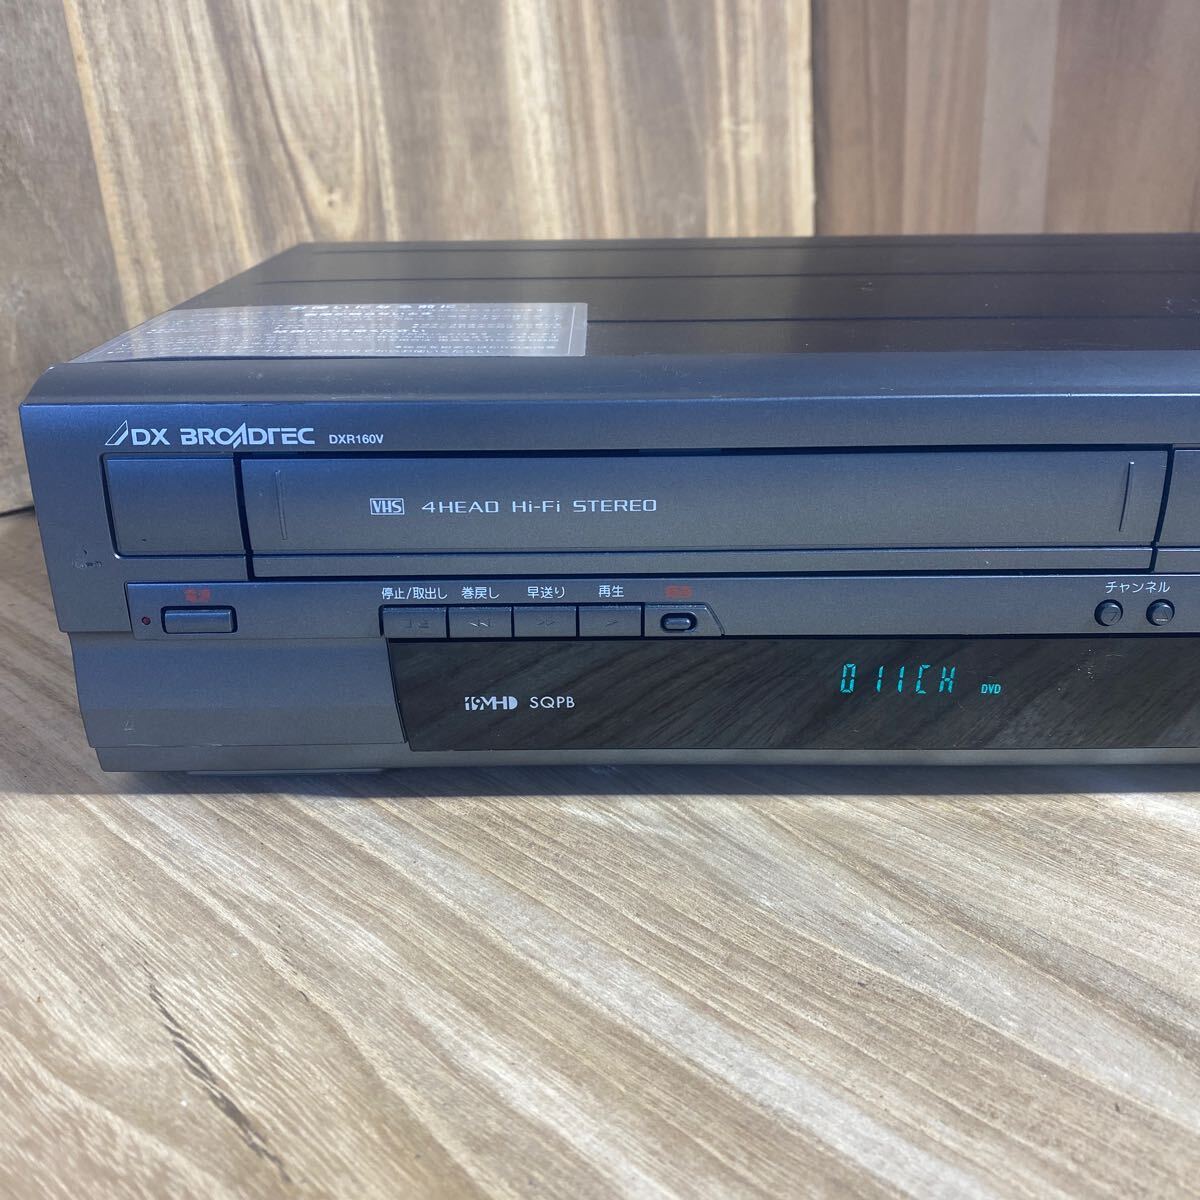 DXアンテナ ビデオ一体型DVDレコーダー DXR160V 管理①_画像2